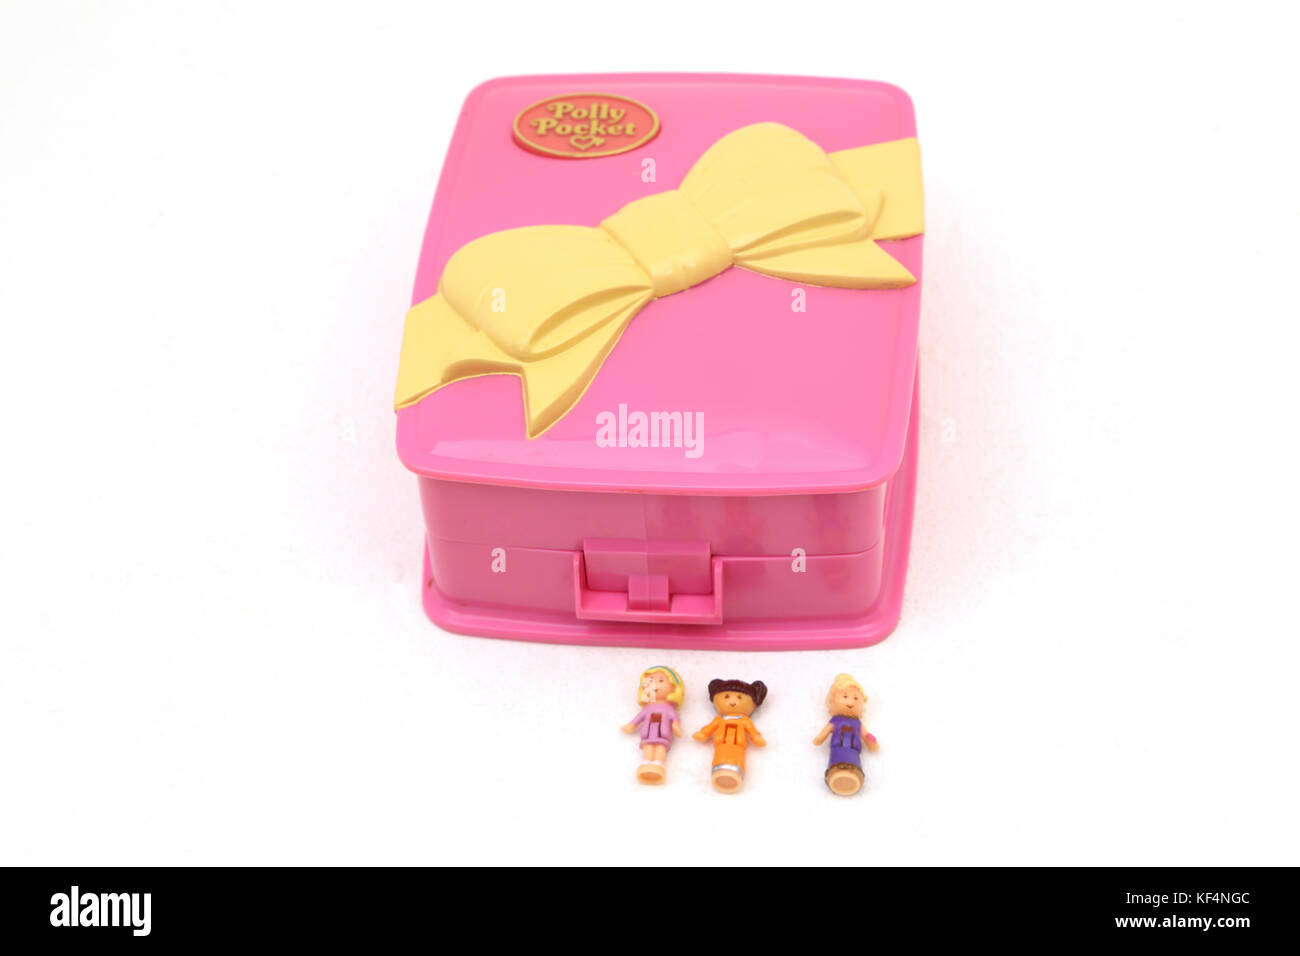 Vintage des années 90, jouet Polly Pocket Star dîner lumineuse avec des poupées Banque D'Images